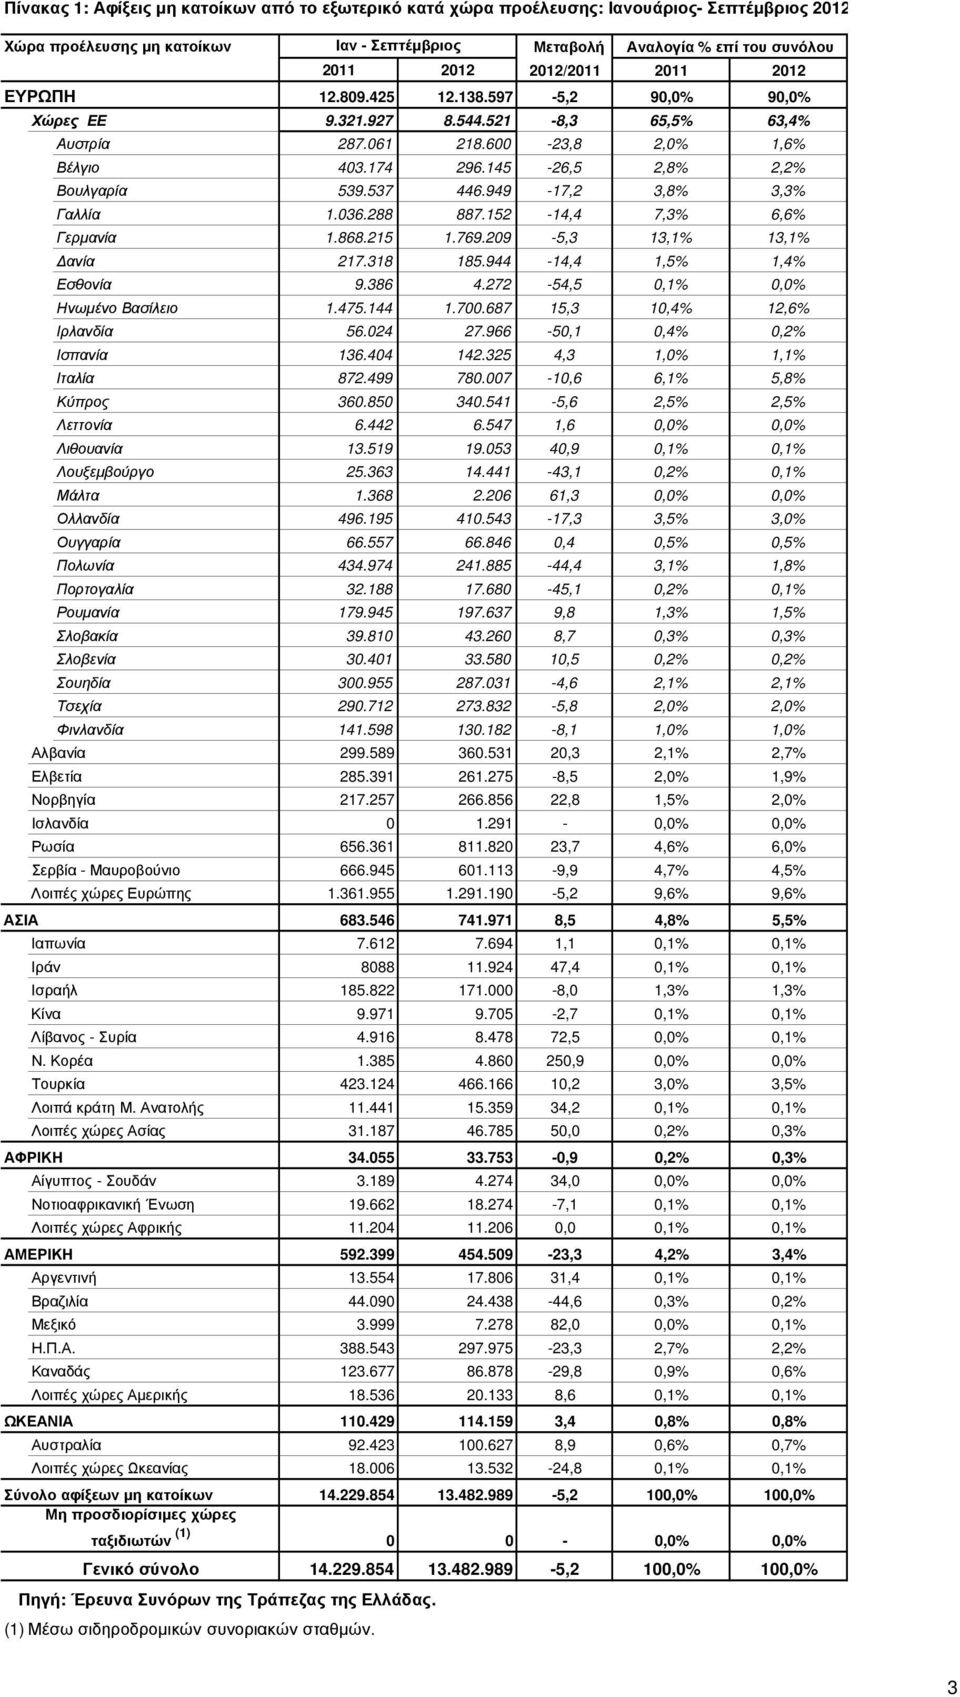 949-17,2 3,8% 3,3% Γαλλία 1.036.288 887.152-14,4 7,3% 6,6% Γερµανία 1.868.215 1.769.209-5,3 13,1% 13,1% ανία 217.318 185.944-14,4 1,5% 1,4% Εσθονία 9.386 4.272-54,5 0,1% 0,0% Ηνωµένο Βασίλειο 1.475.